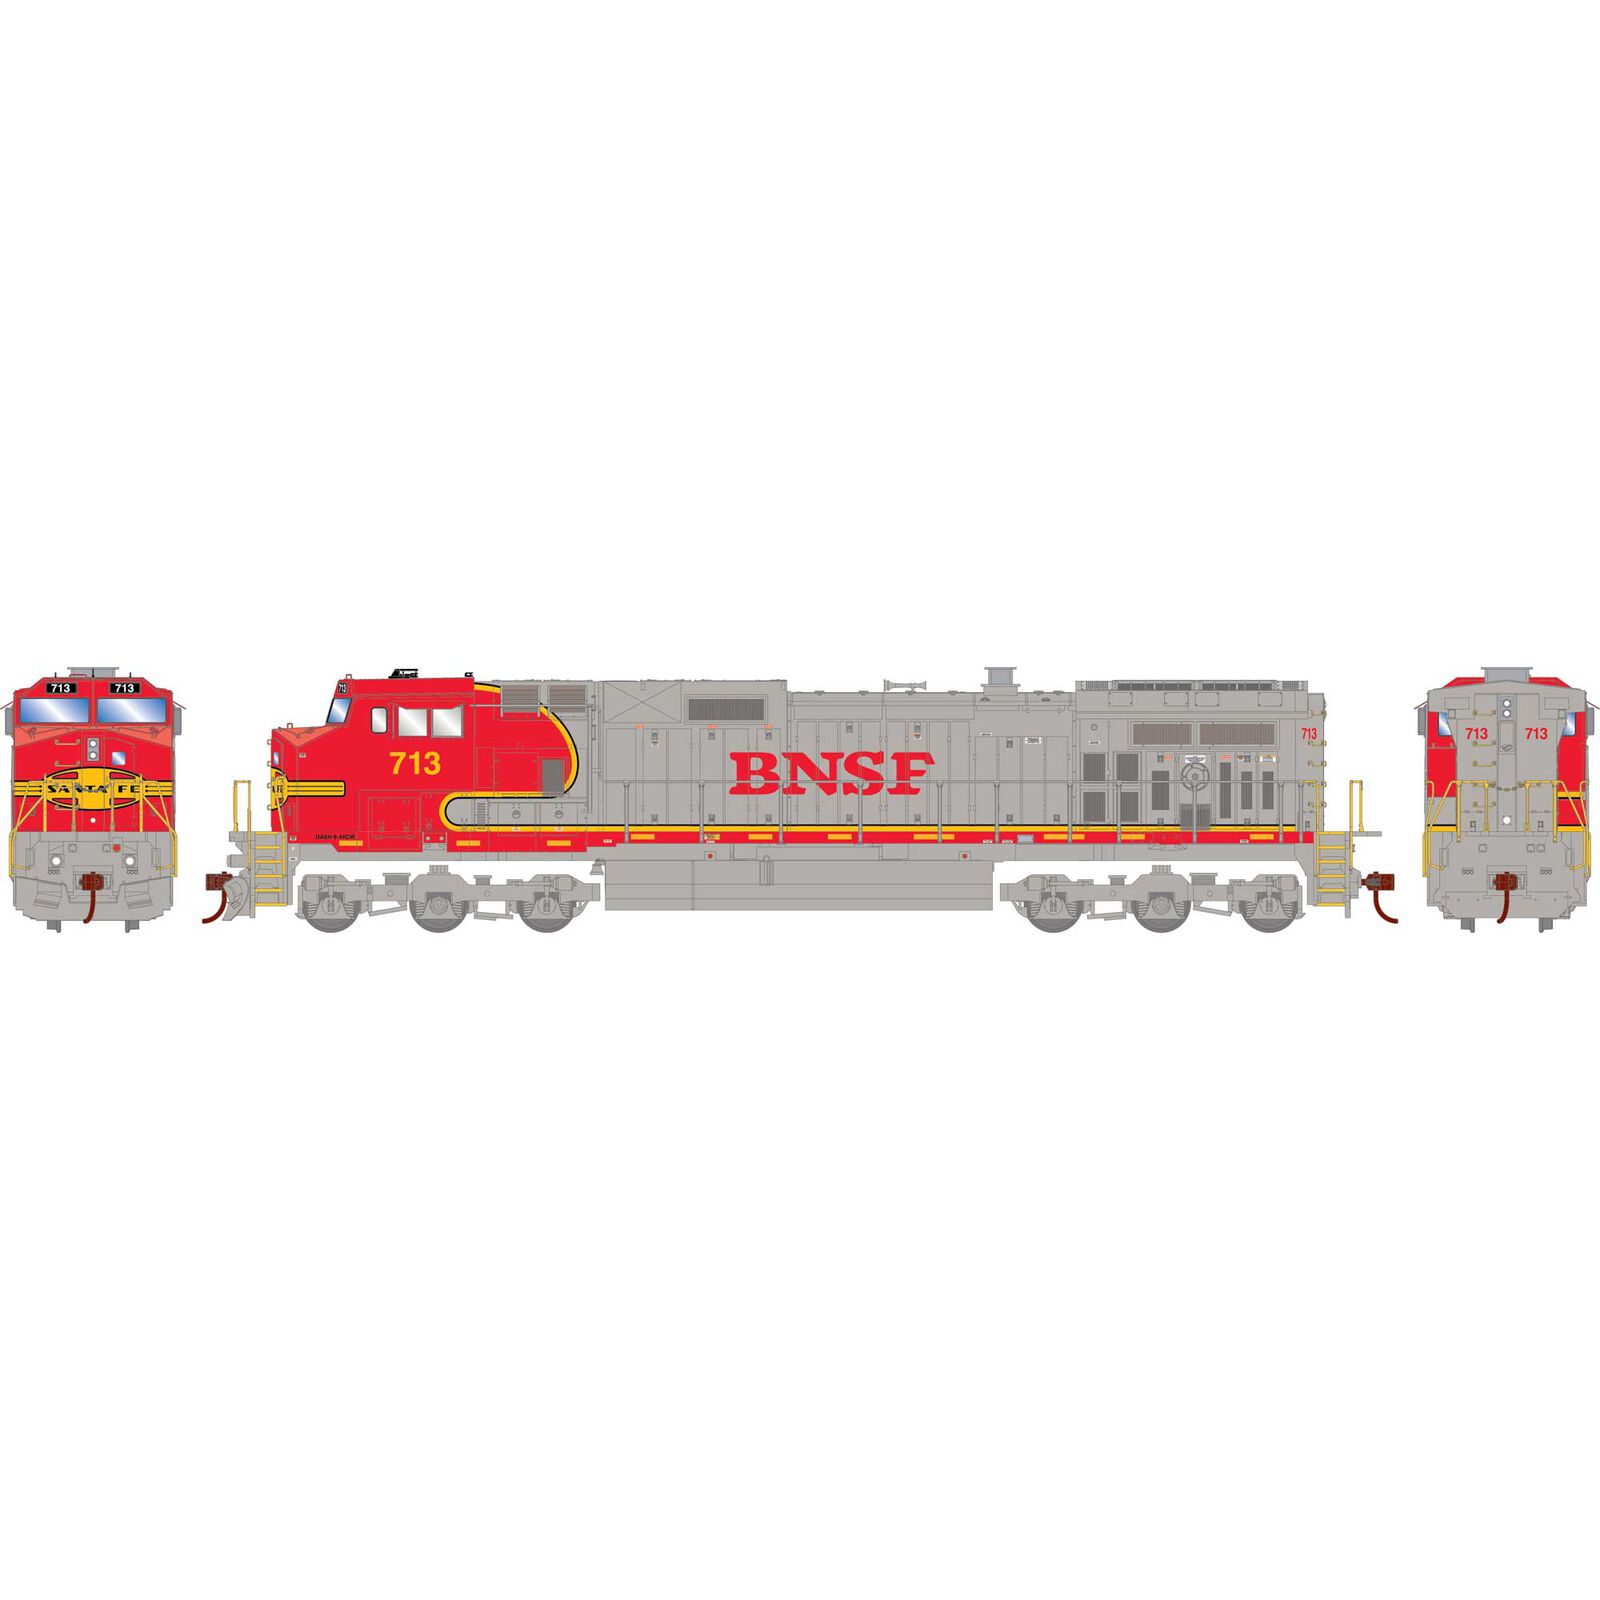 HO Dash 9-44CW Locomotive Sound-Ready, BNSF & Warbonnet #713